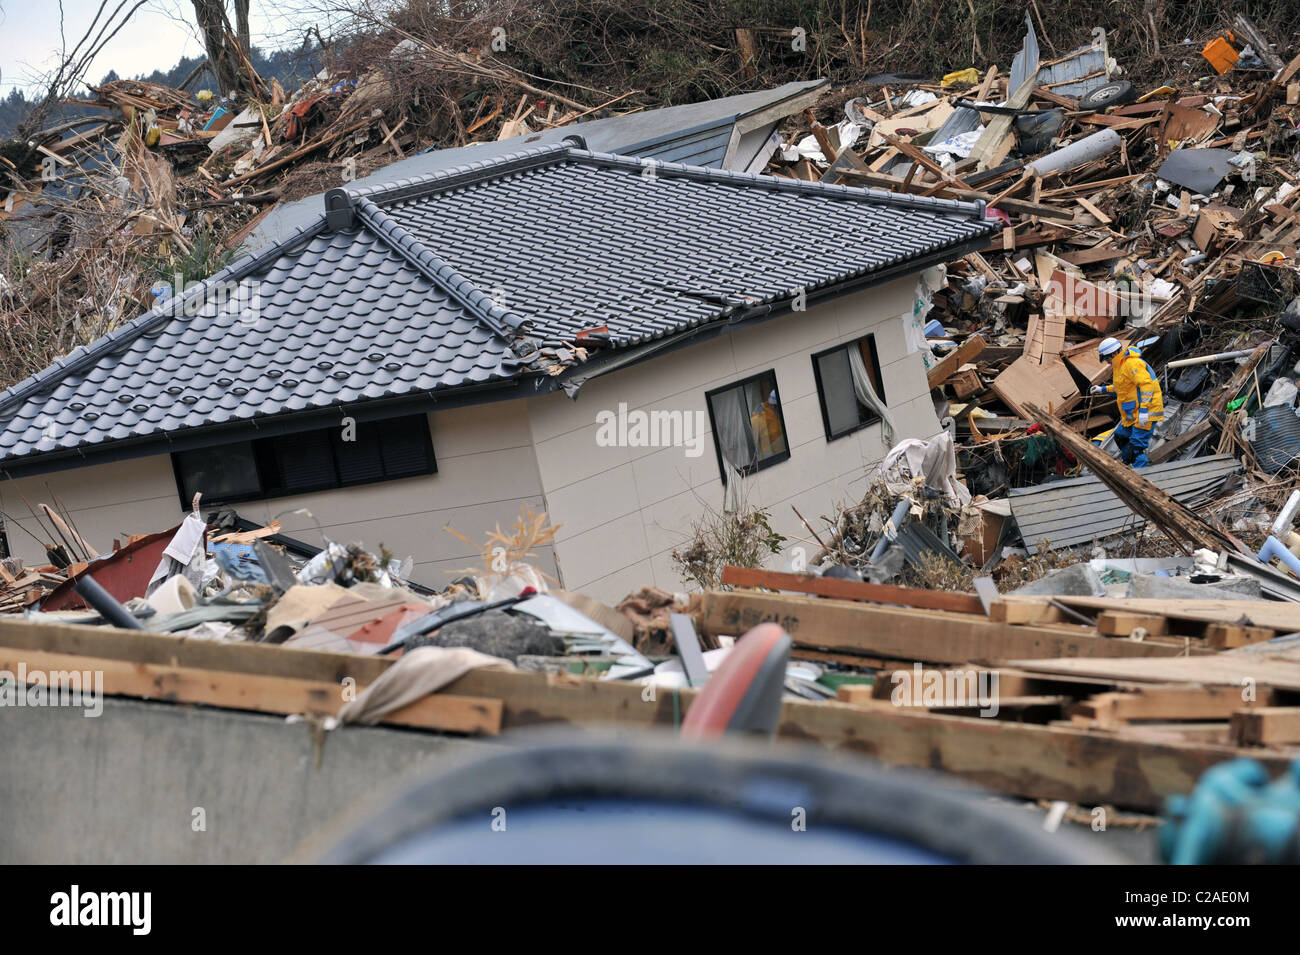 La ricerca in giapponese e delle squadre di soccorso alla ricerca di superstiti dopo migliaia di abitazioni sono state distrutte dopo un 9.0 Mw terremoto Foto Stock